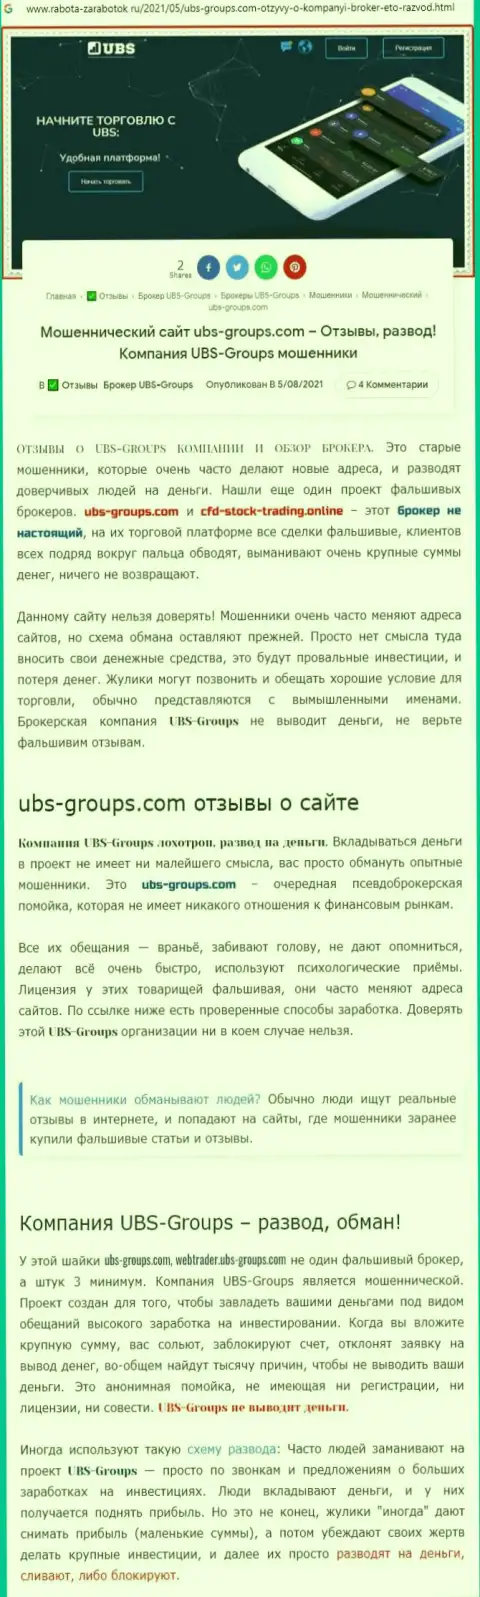 Автор отзыва пишет, что UBS-Groups - это МОШЕННИКИ !!!